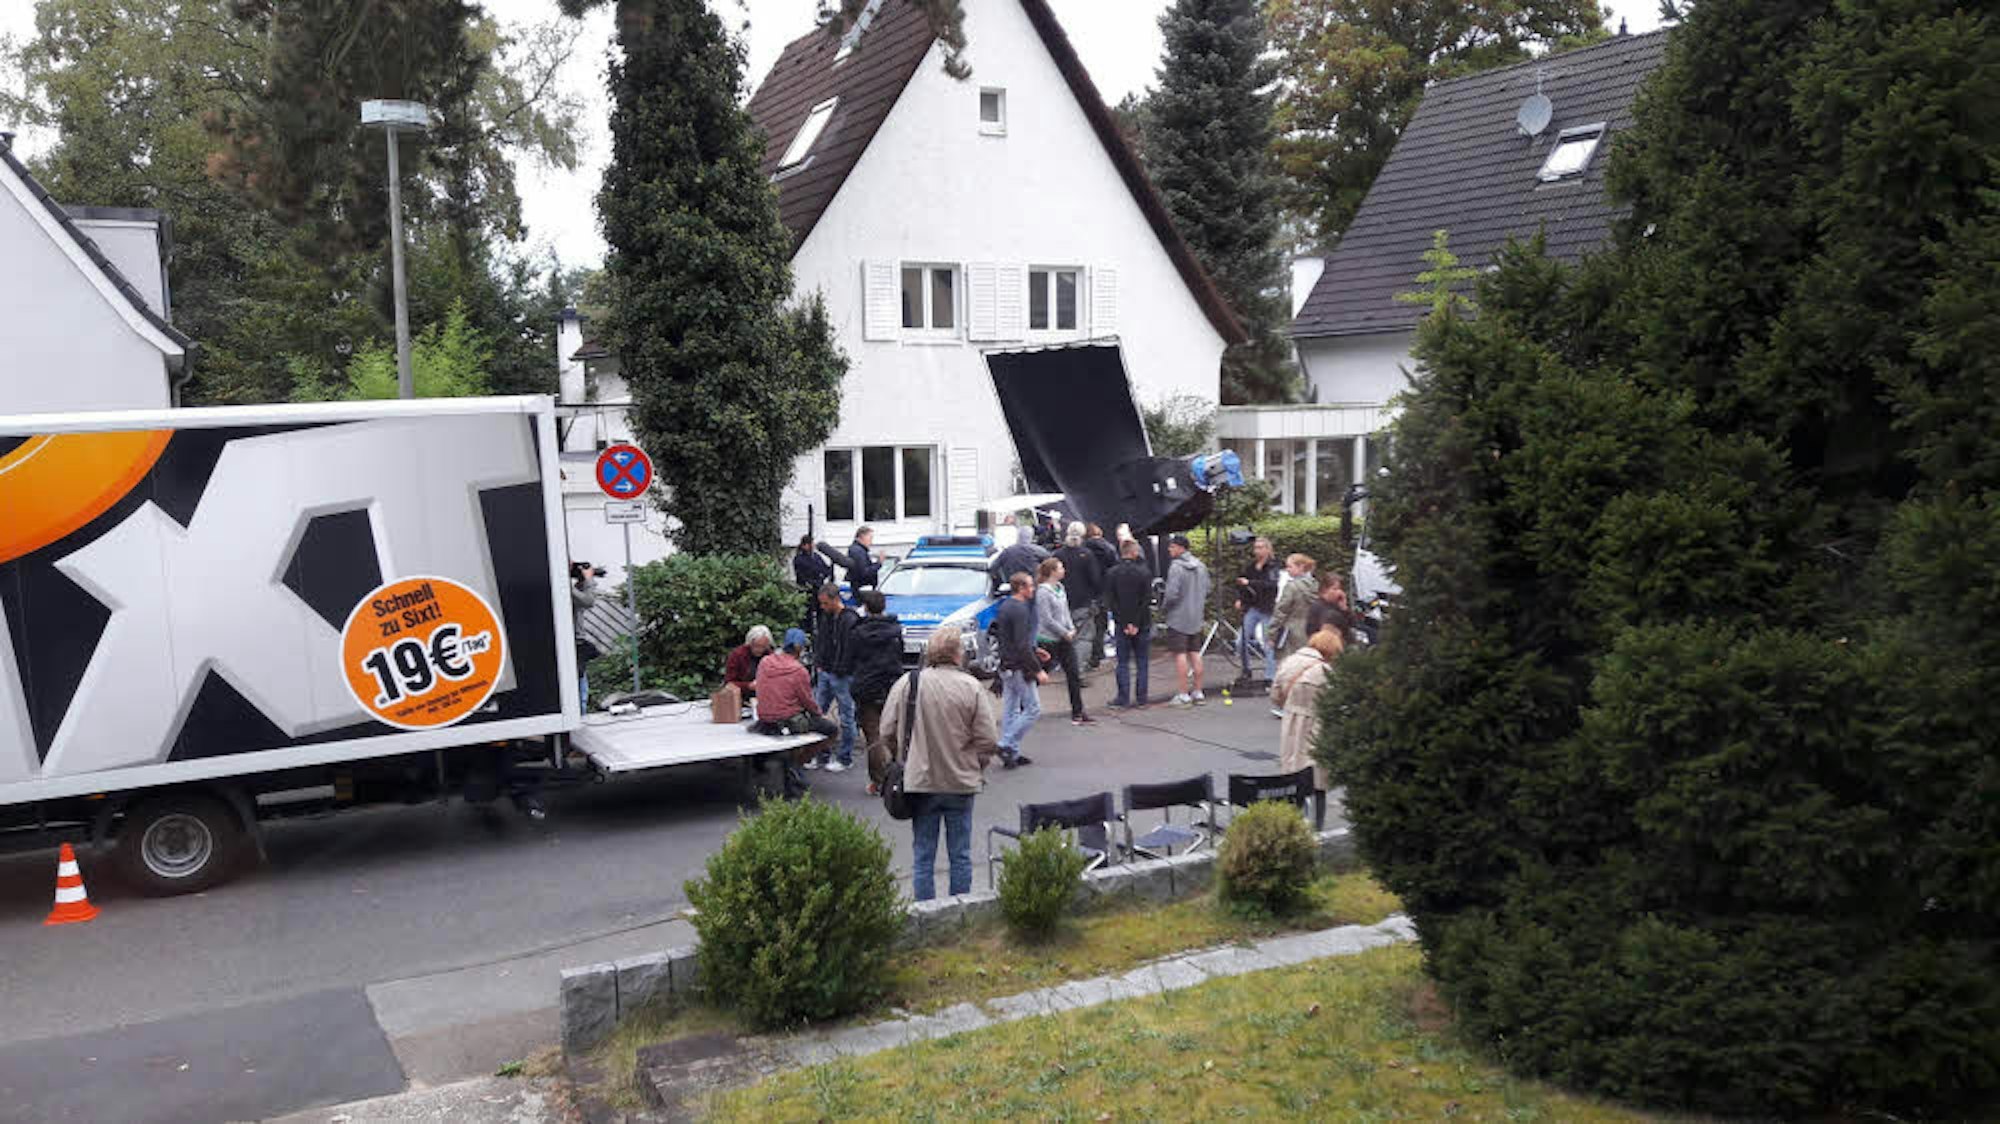 Miet-Lkw, ein Streifenwagen, Scheinwerfer und eine vielköpfige Film-Crew – Dreharbeiten an der Saarlauterner Straße.